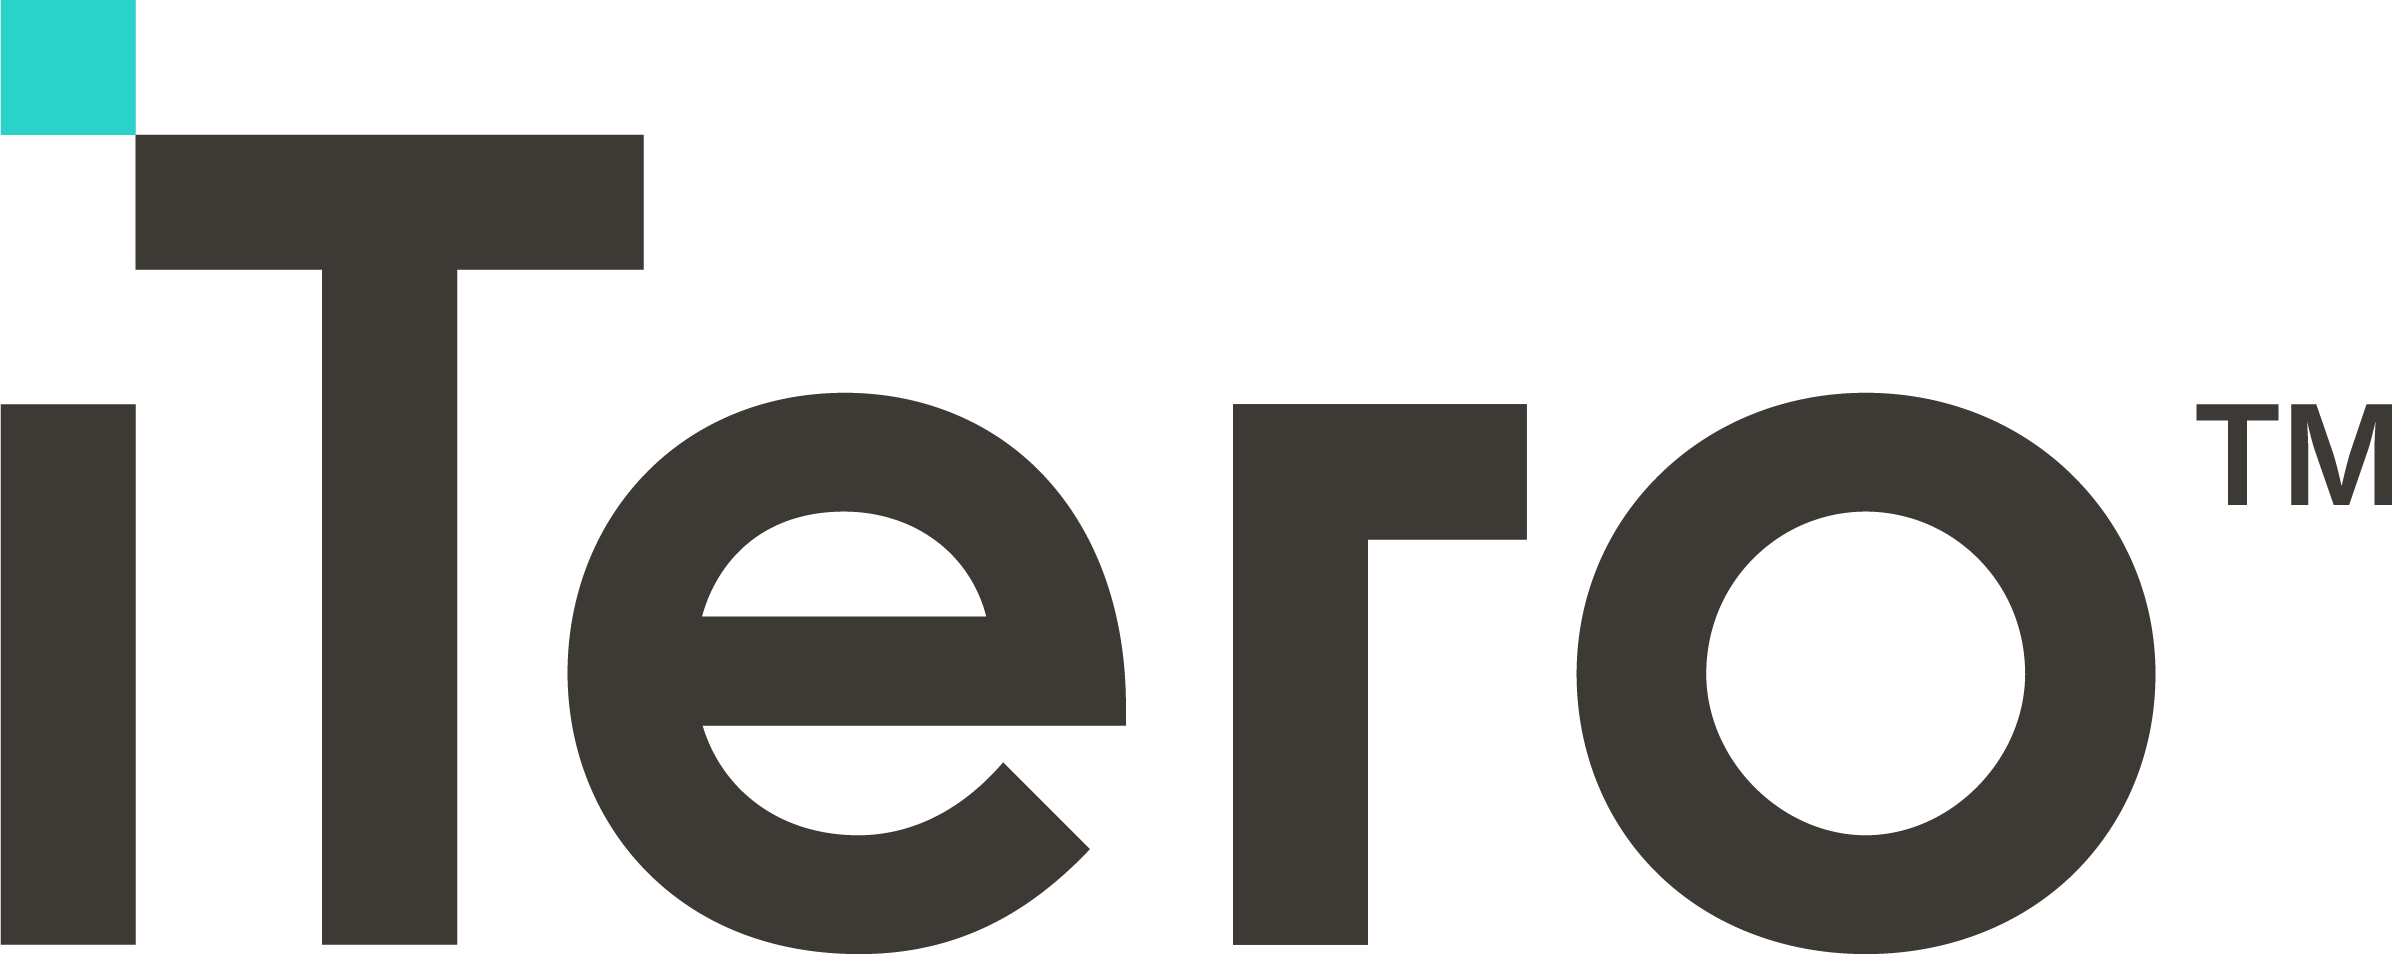 iTero logo